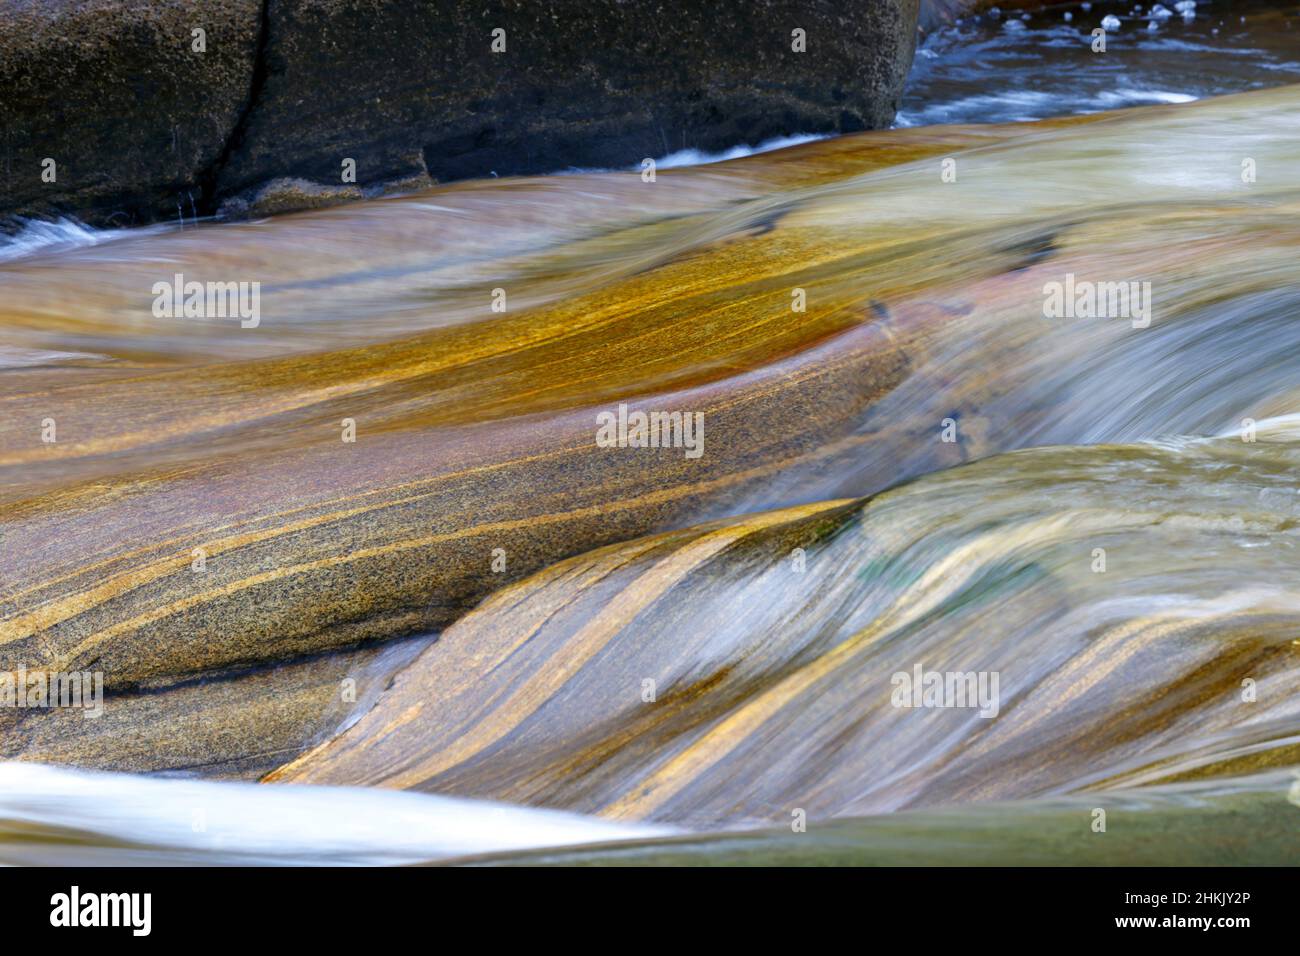 Glatt polierte Felsen im Fluss Verzasca, Formen und Farben auf überfließenden Felsen, Schweiz, Tessin, Lavertezzo Stockfoto